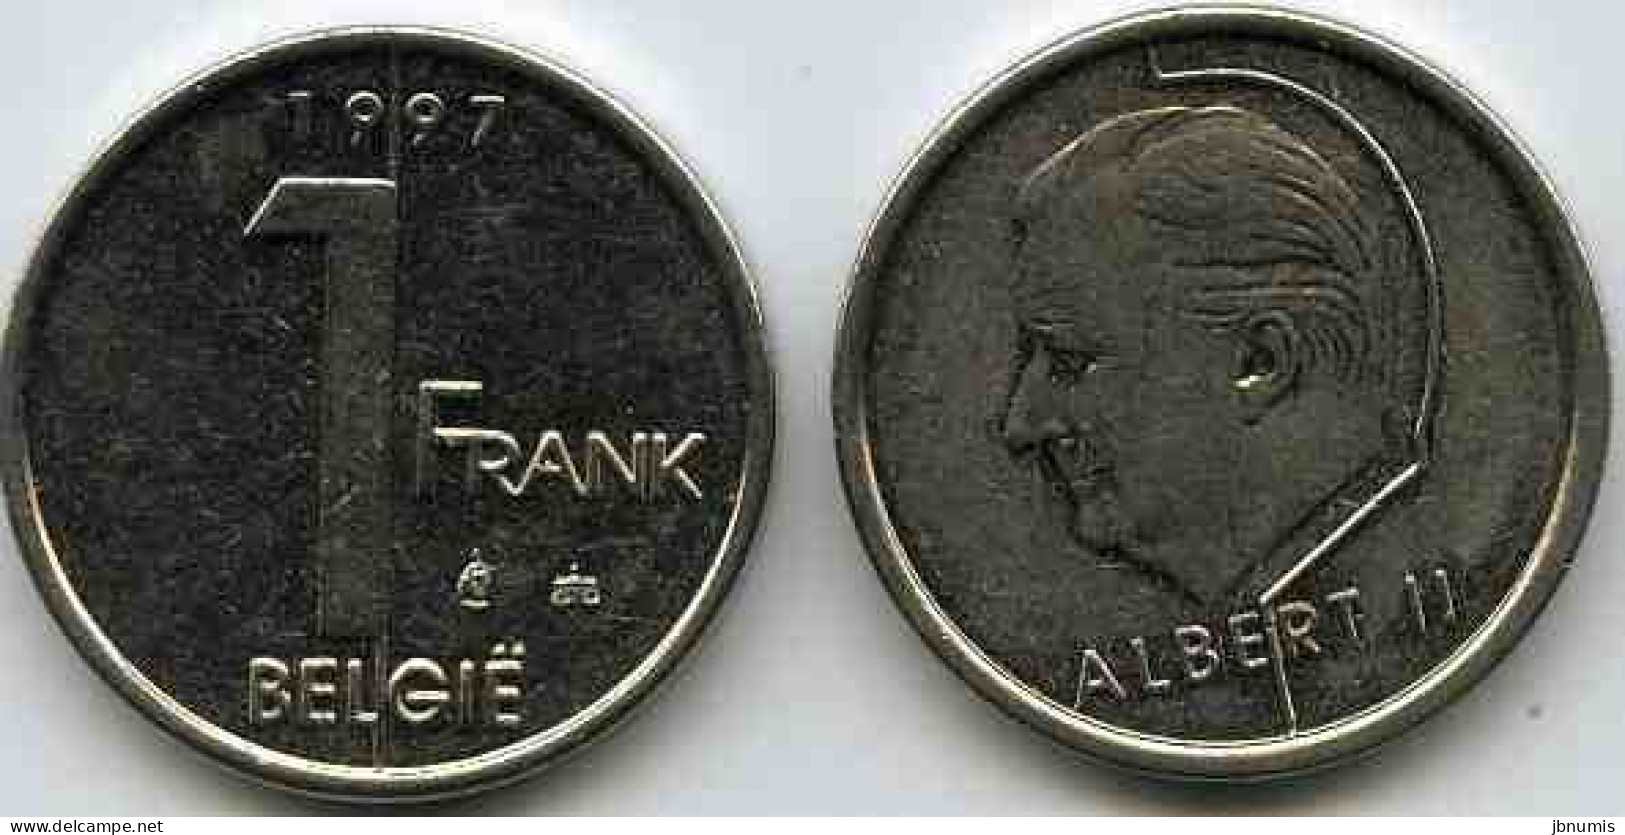 Belgique Belgium 1 Franc 1997 Flamand KM 188 - 1 Franc